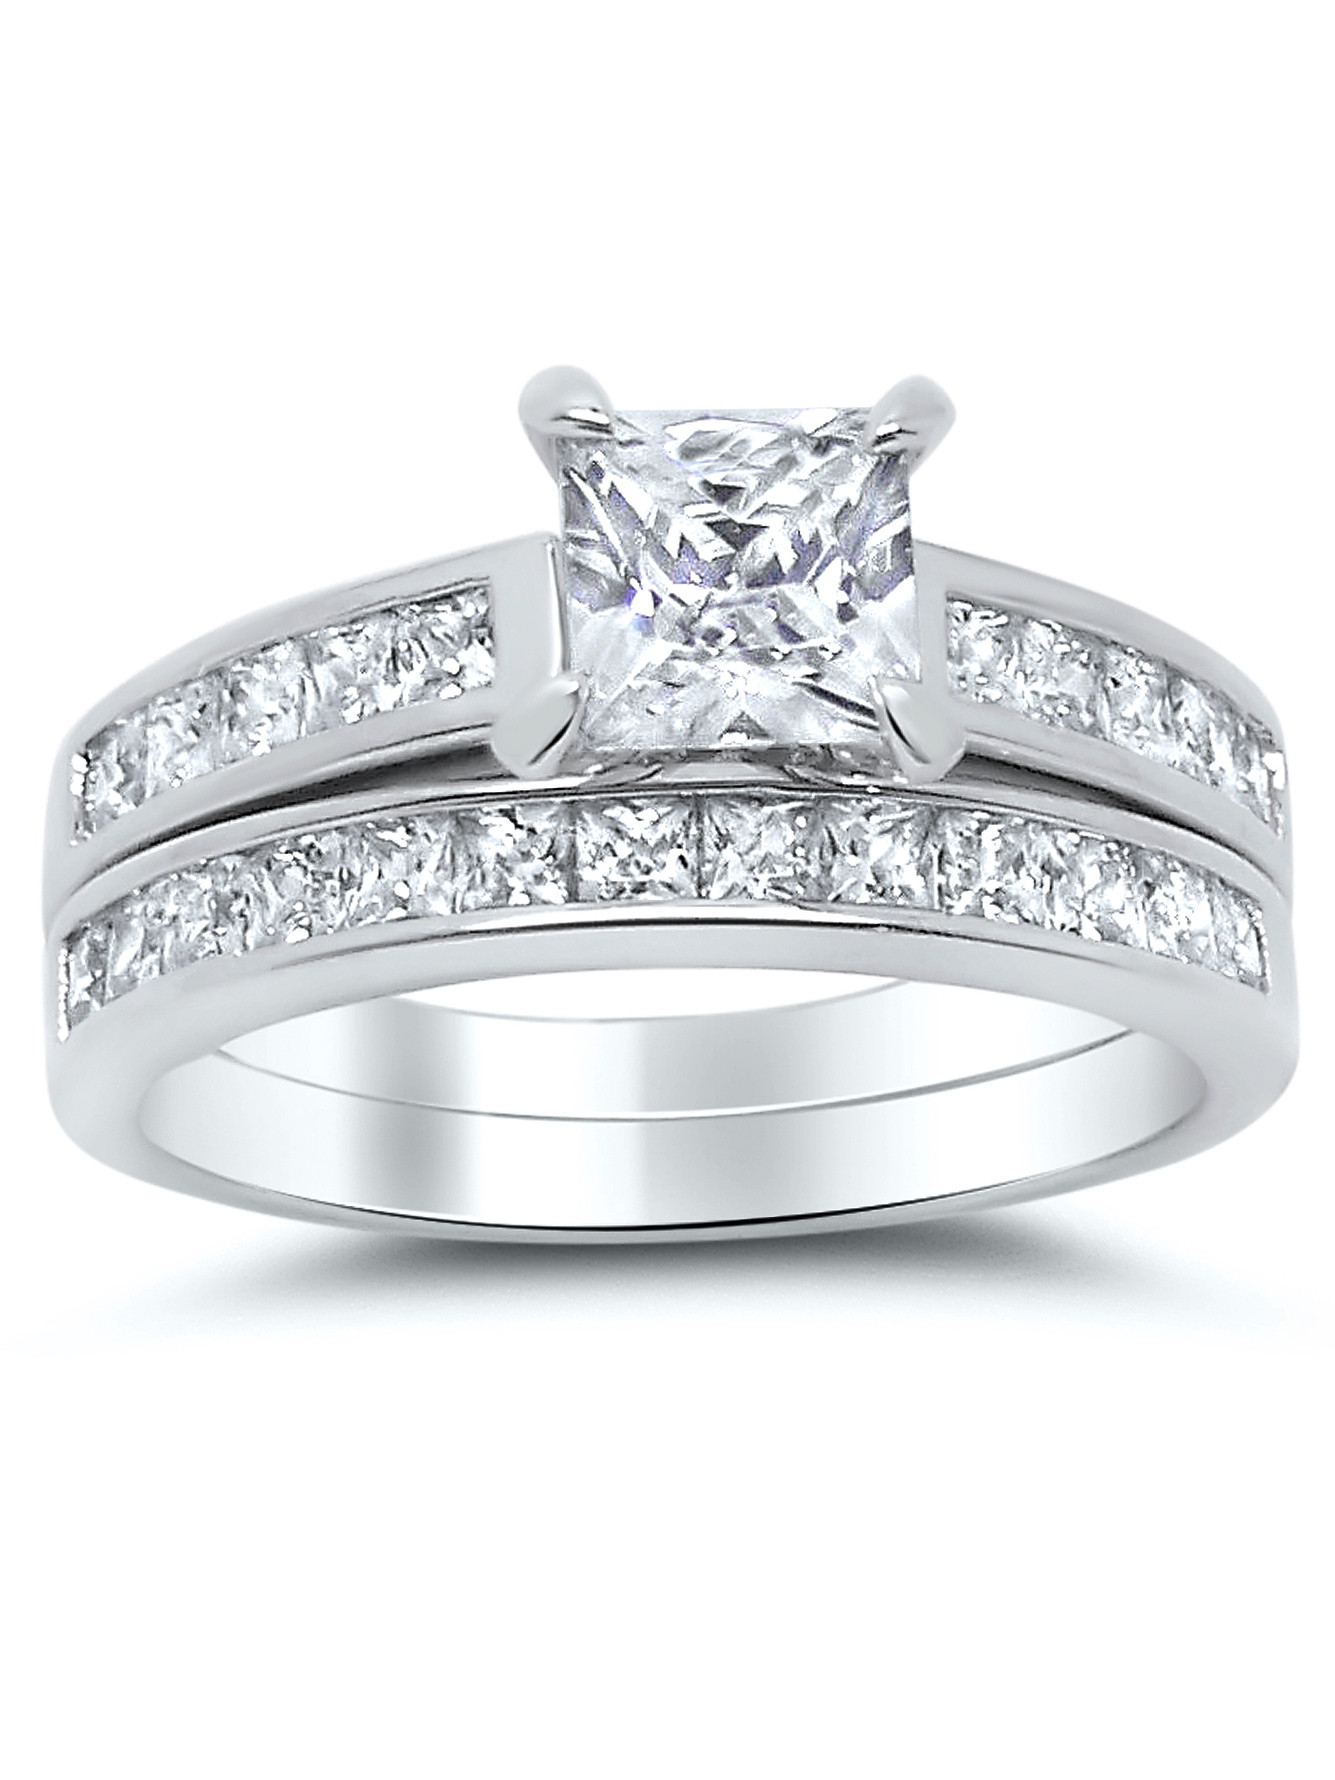 Wedding Rings Sets At Walmart
 Factory 925 Sterling Silver Princess Cut Bridal Set